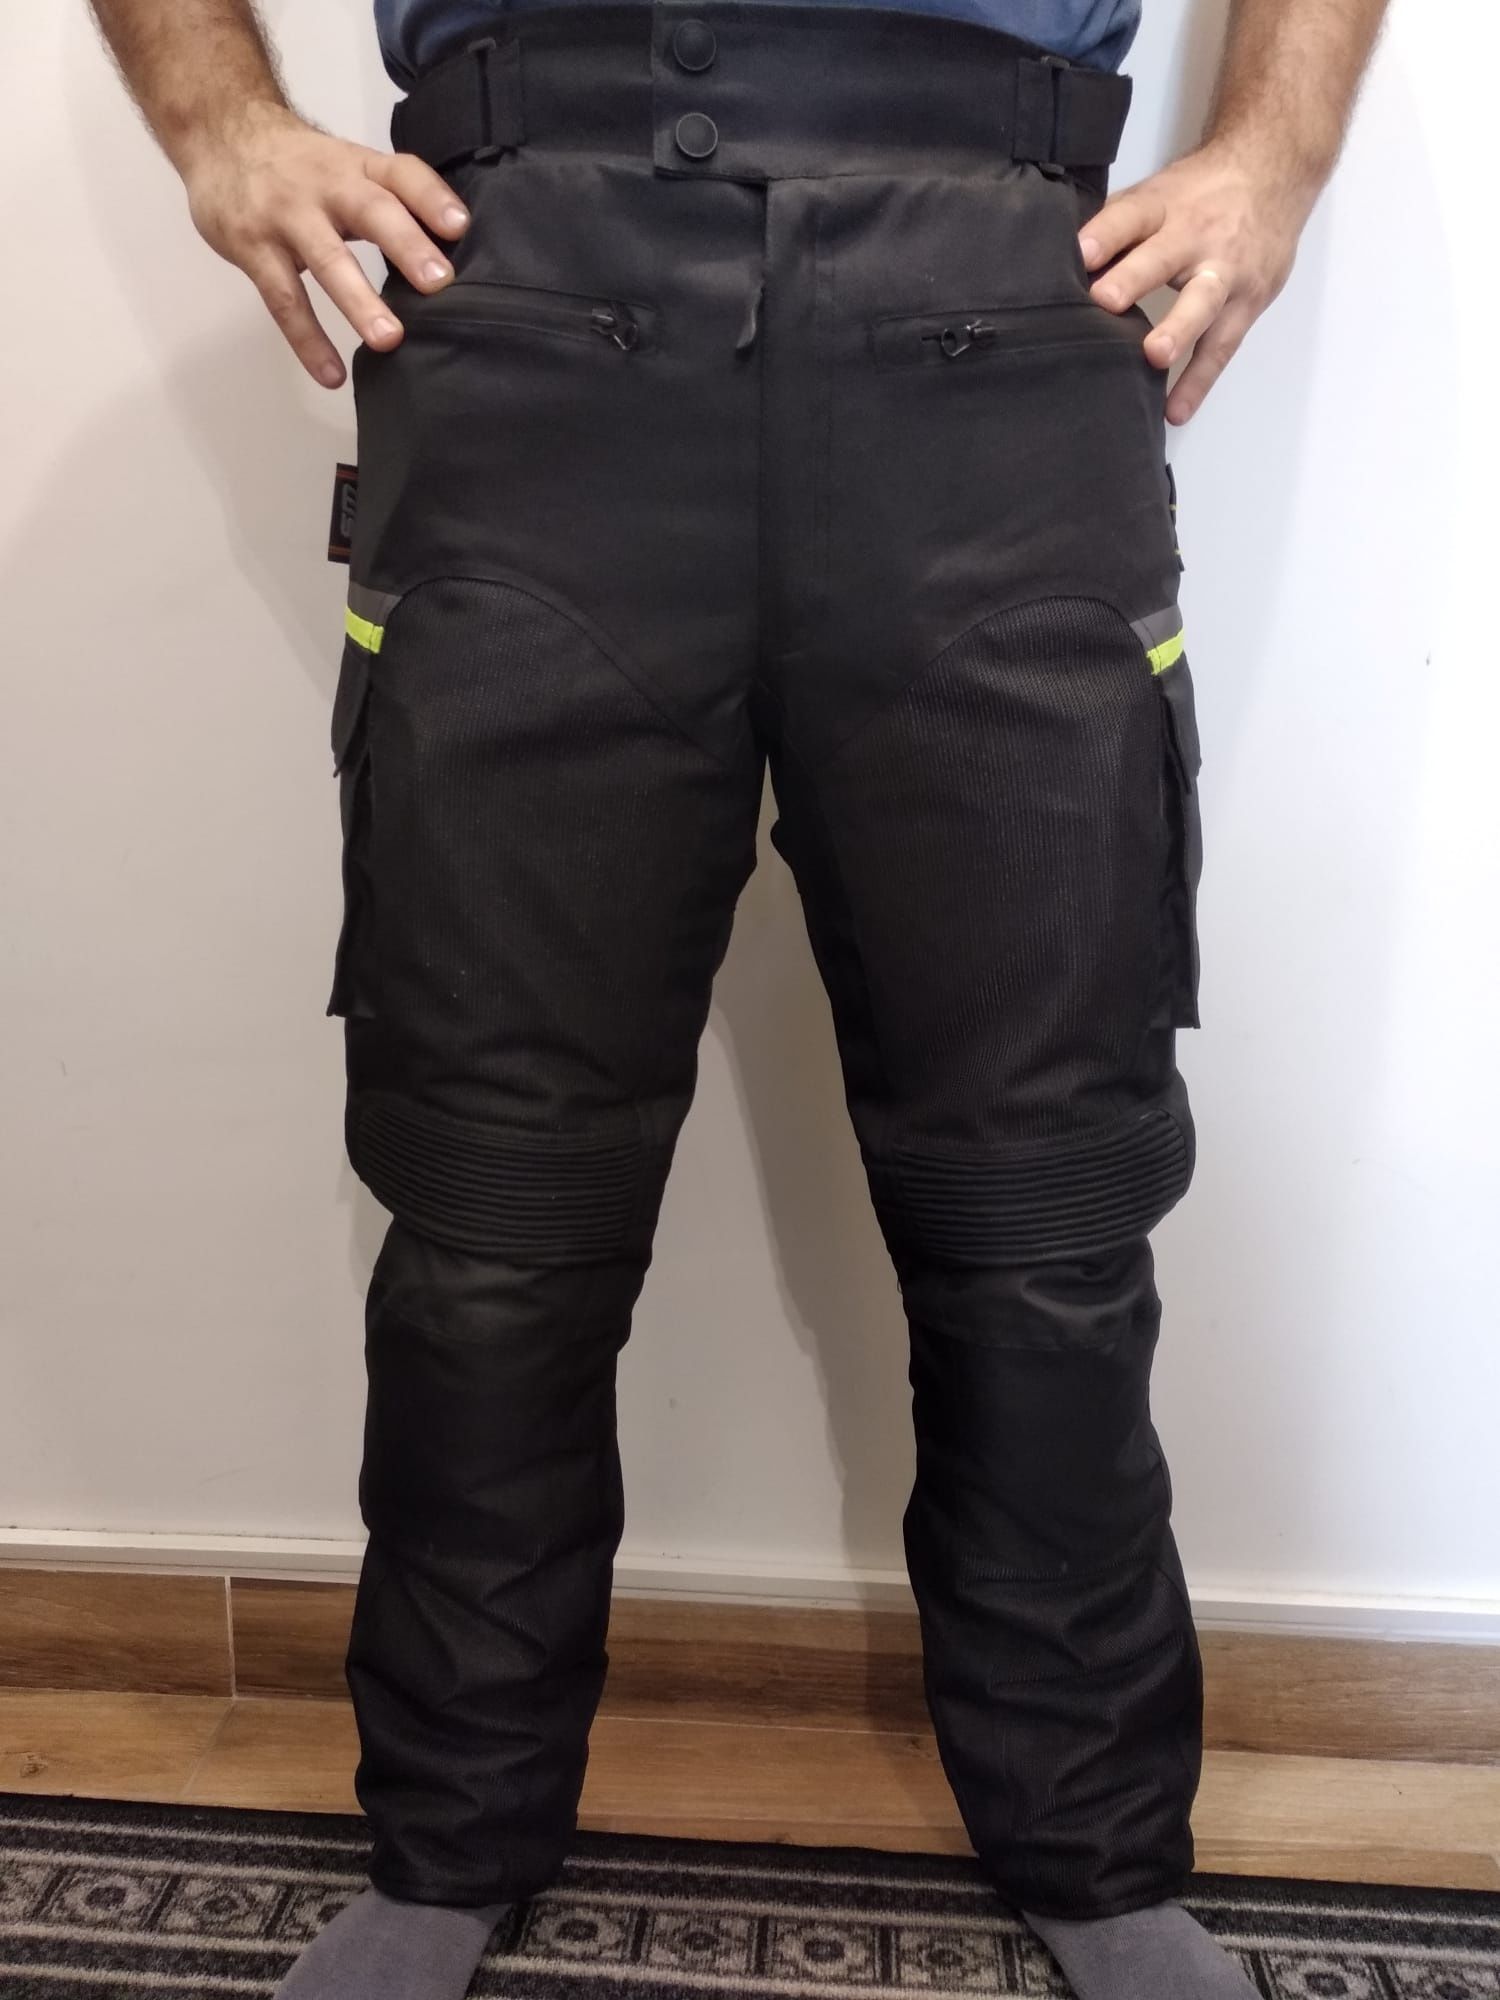 Pantaloni moto Meshtech Visible textil marimea S, M, L, XL, 2XL Noi!!